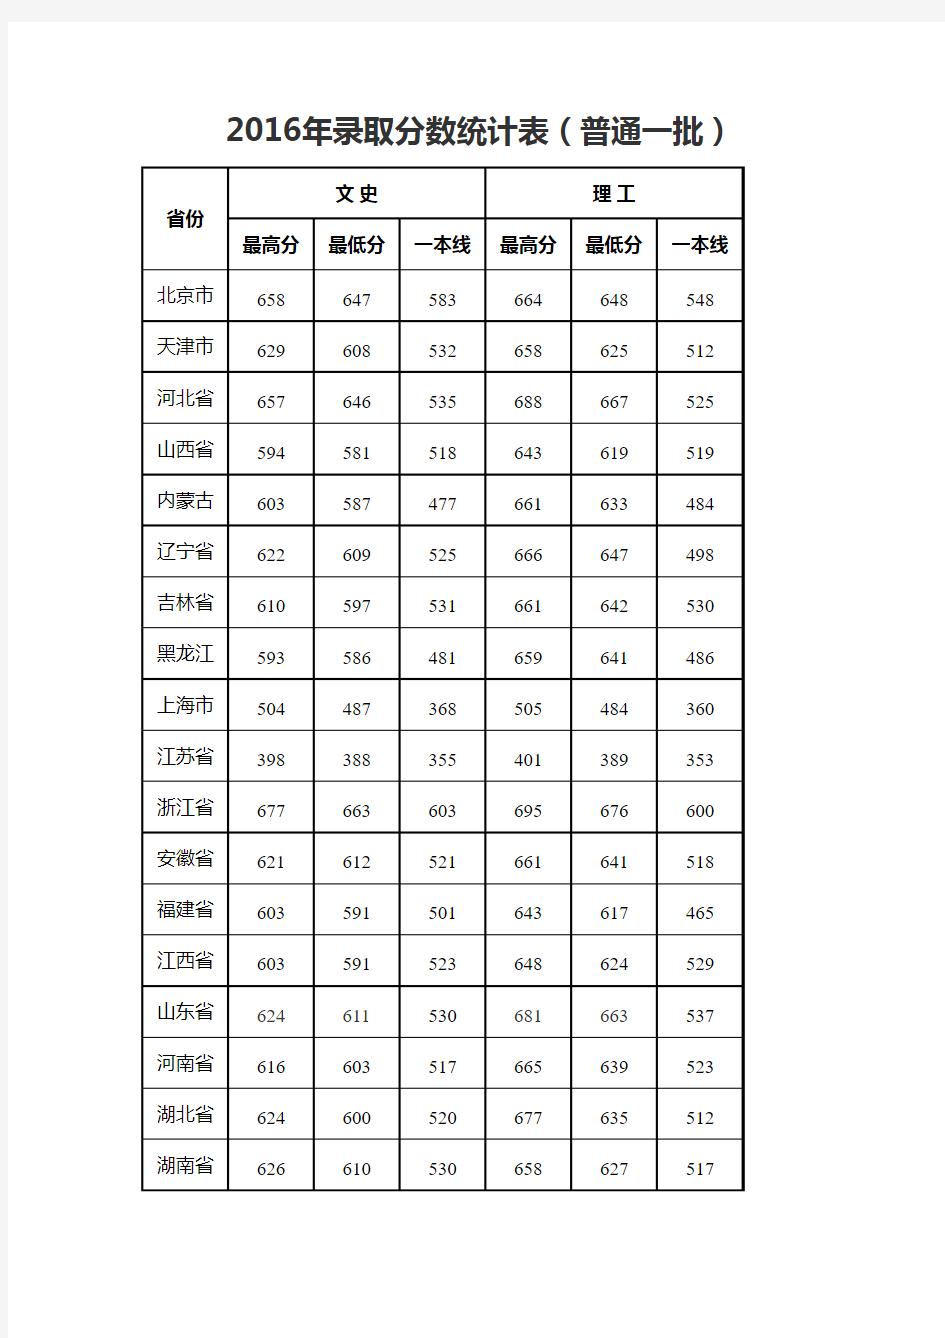 2016年武汉大学各个批次全国录取分数统计表-摘录自武汉大学官方网站